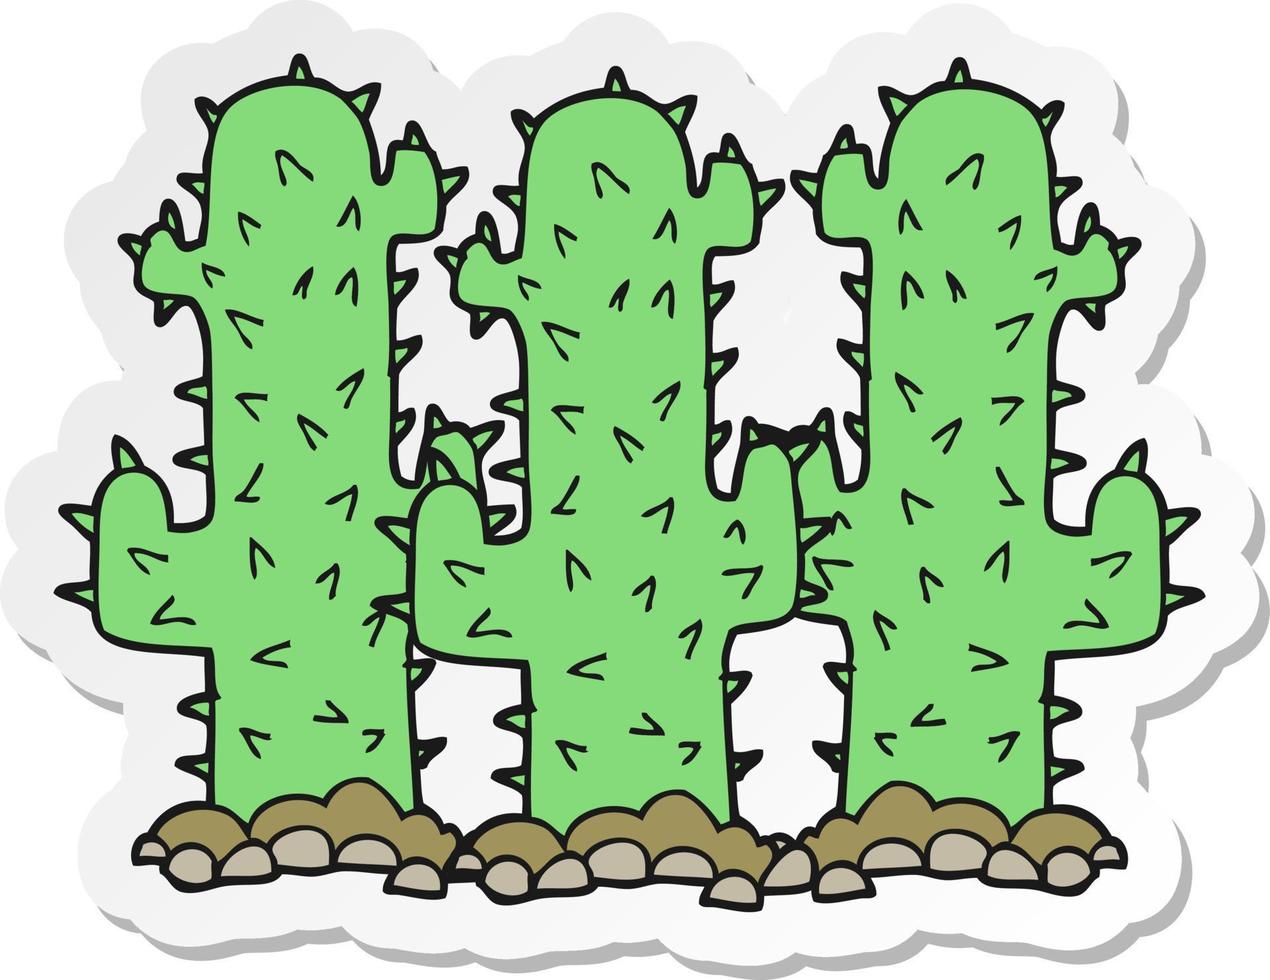 adesivo di un cactus cartone animato vettore